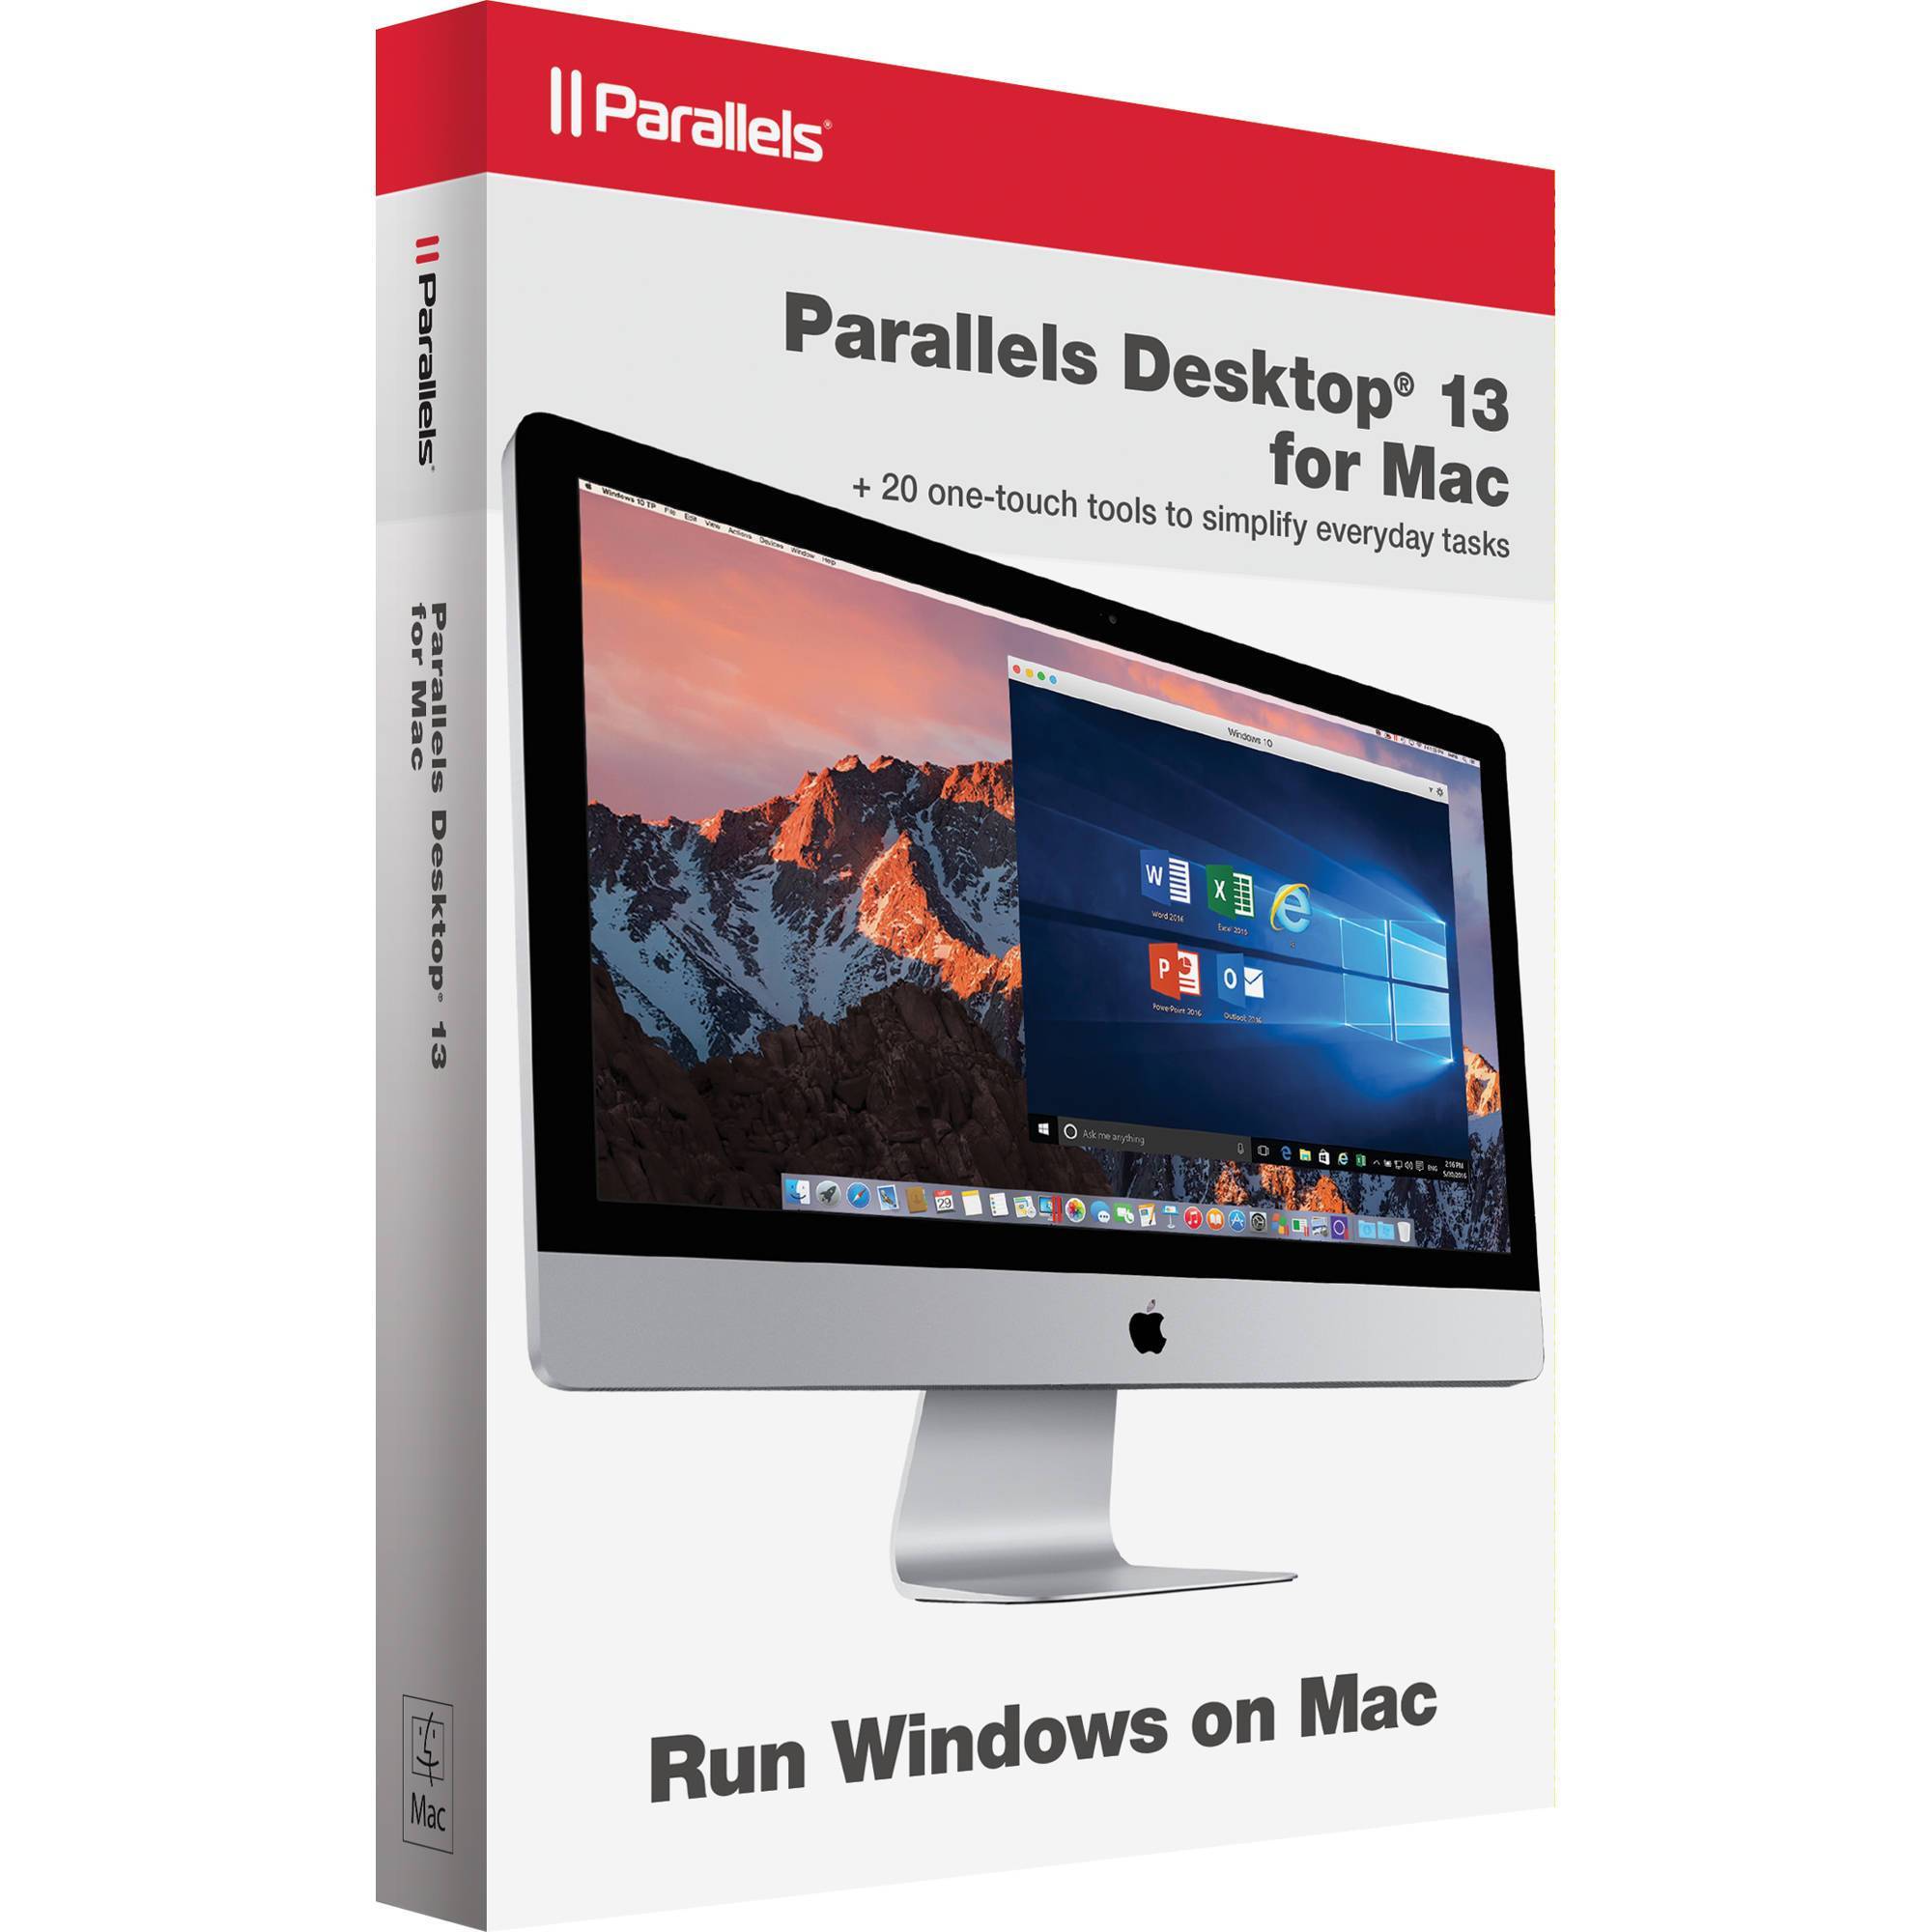 Parallels desktop 12 activation key